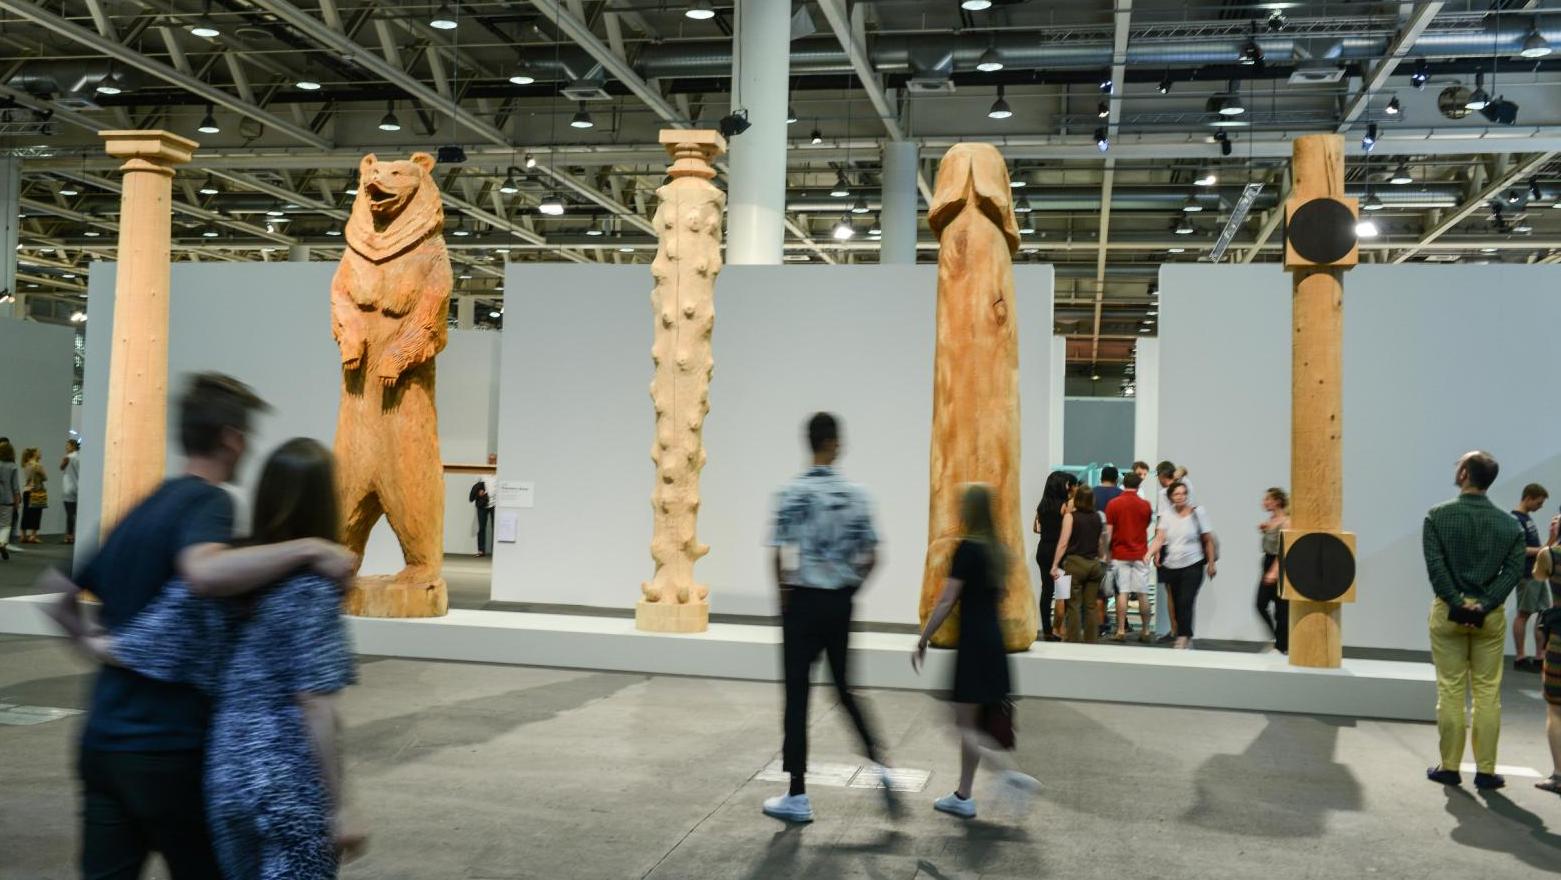 Dans la section Unlimited, cinq monumentales sculptures de Peter Regli (né en 1959)... Art Basel, une année faste